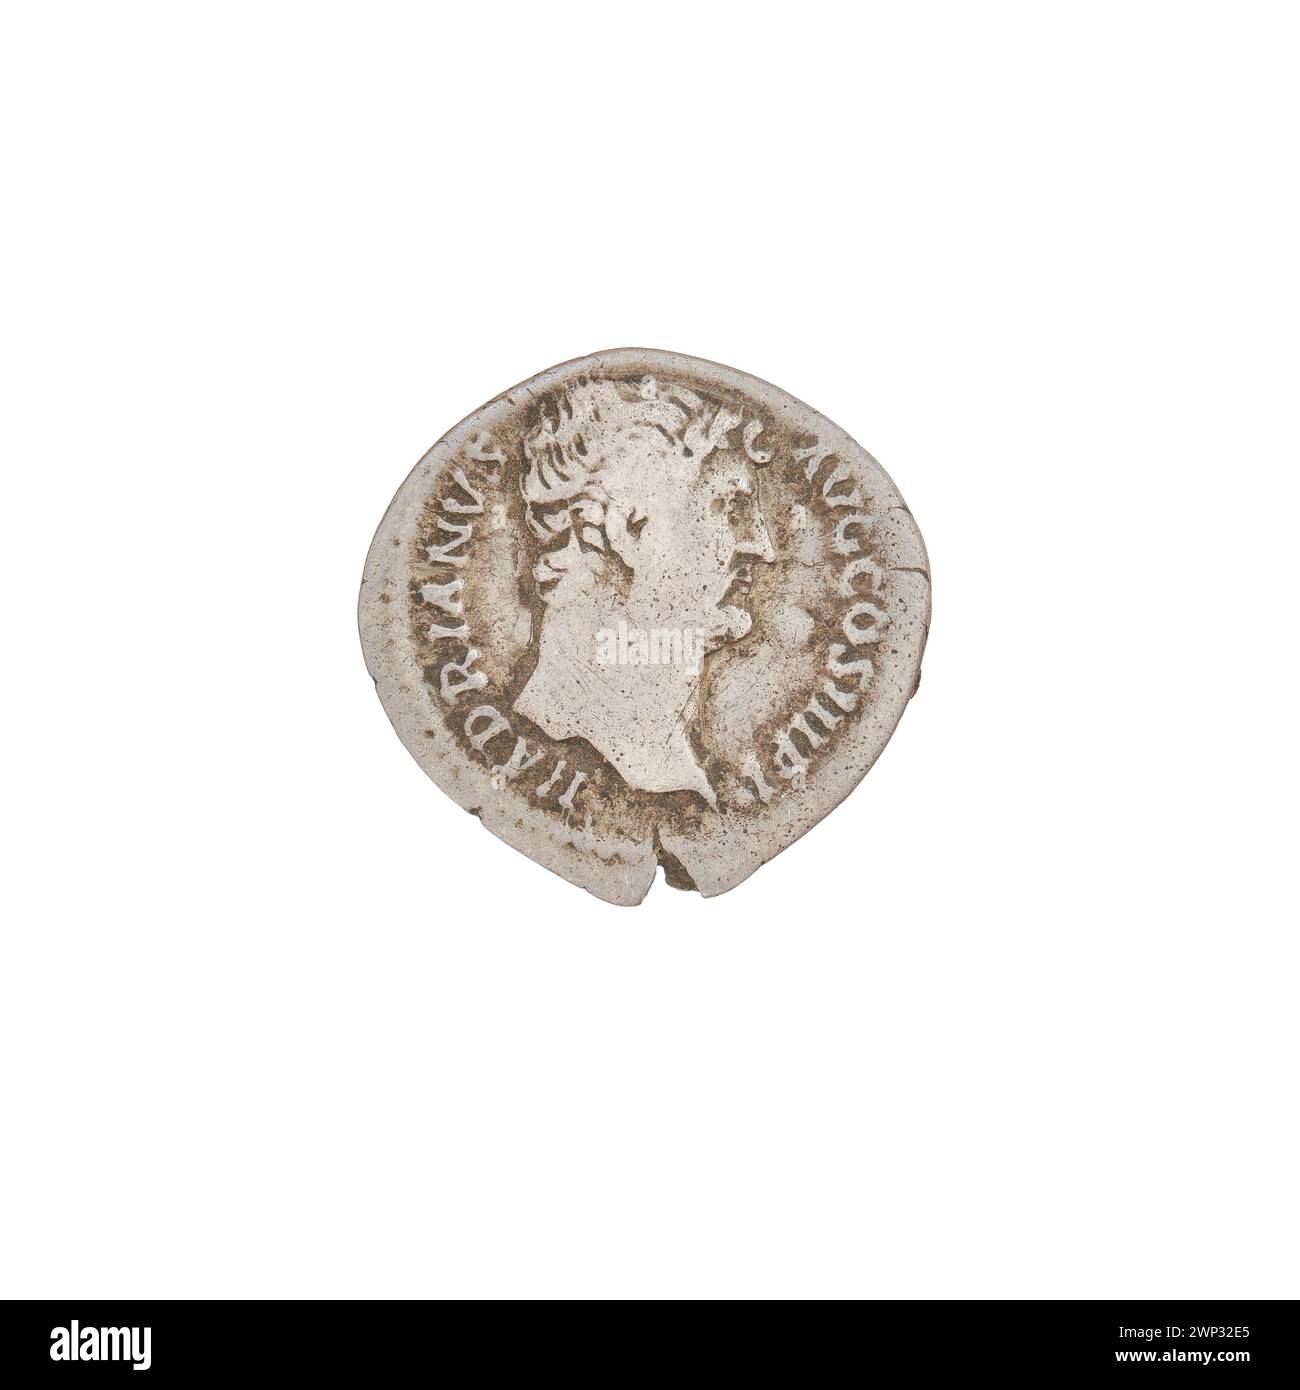 Denarius ; Hadrien (76-138, empereur romain 117-138) ; 132-134 (132-00-00-134-00-00) ; Nil (personnification), draperies (vêtements), têtes, hippopotames Banque D'Images